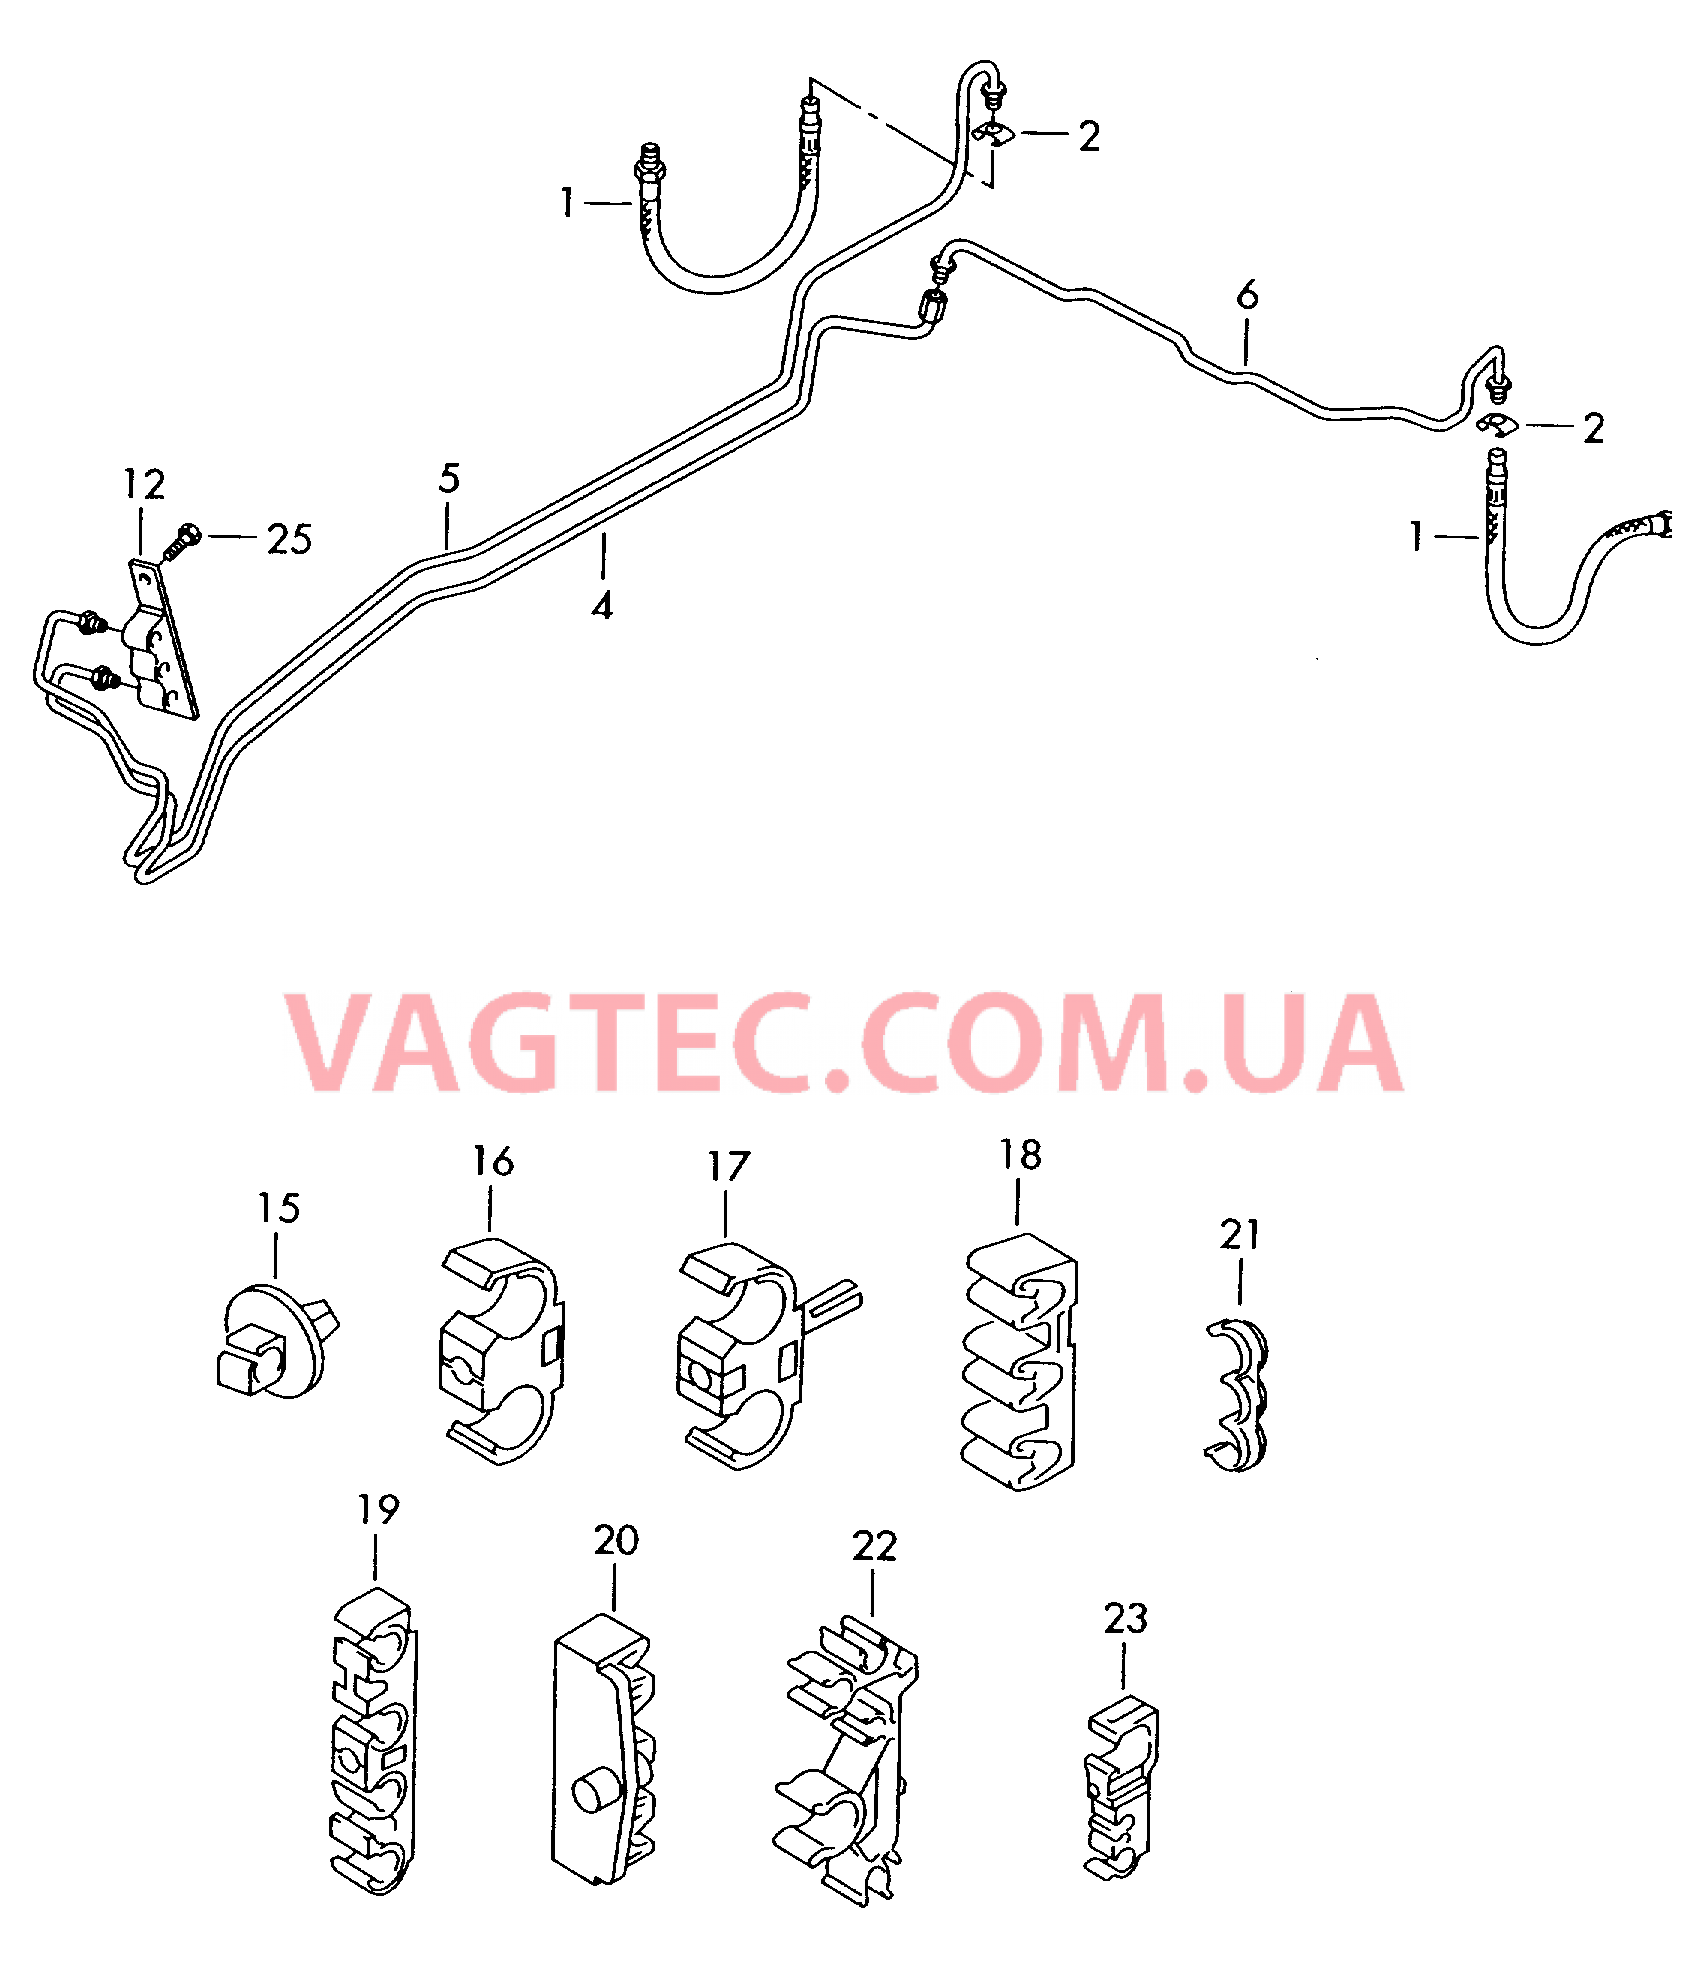 Тормозная трубка Тормозной шланг  для VOLKSWAGEN Touareg 2007-1